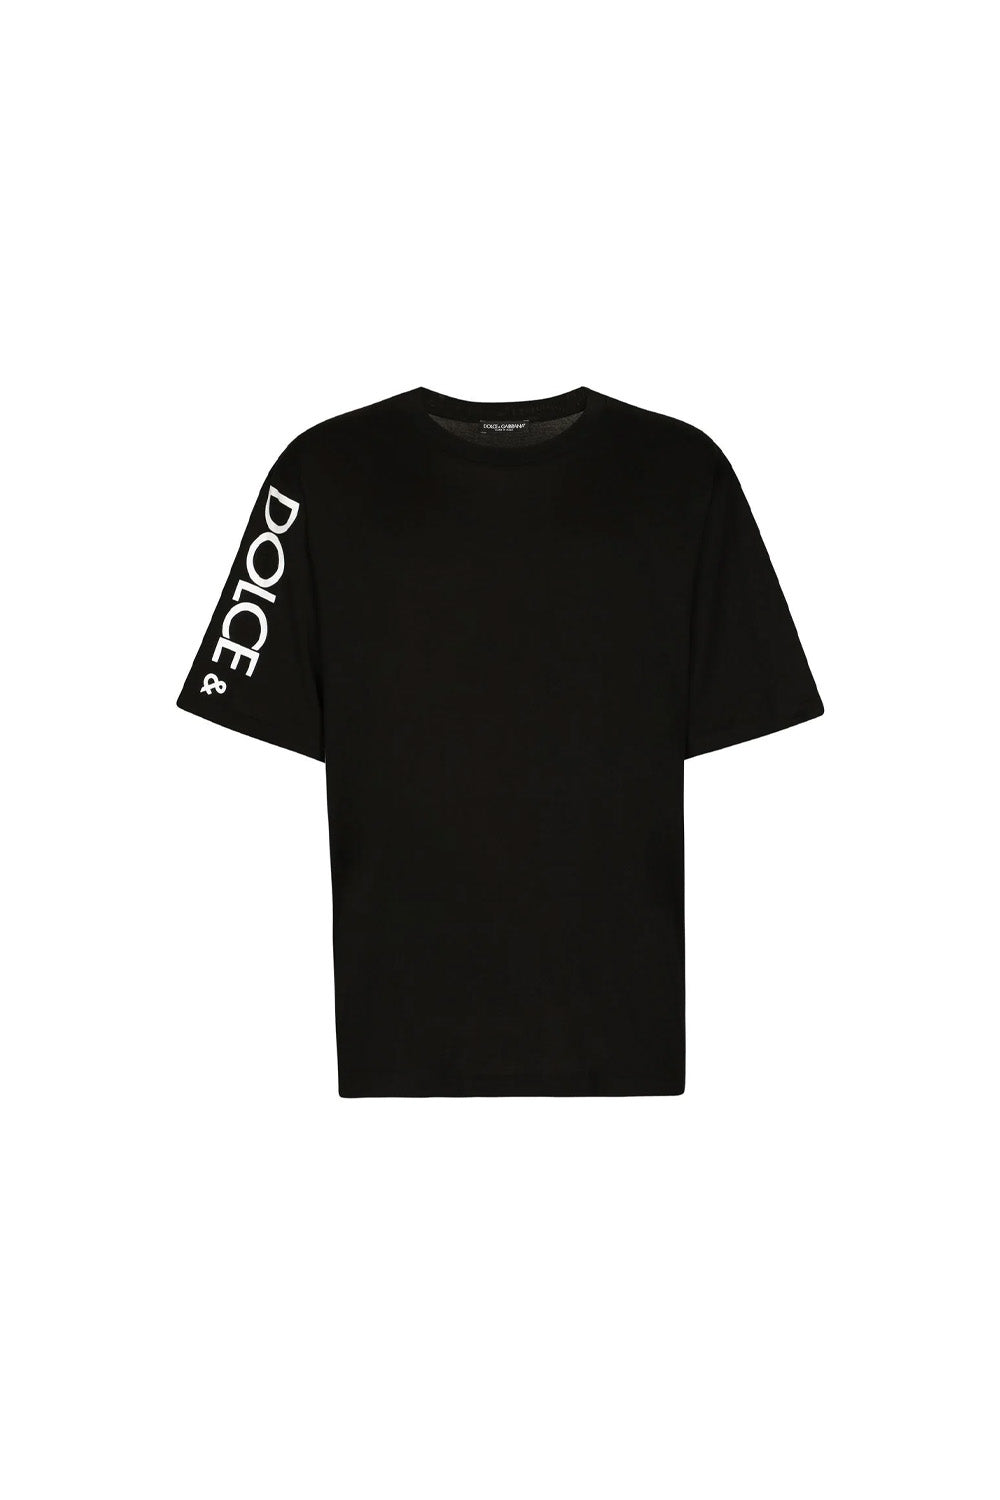 Dolce & Gabbana logo print T-shirt